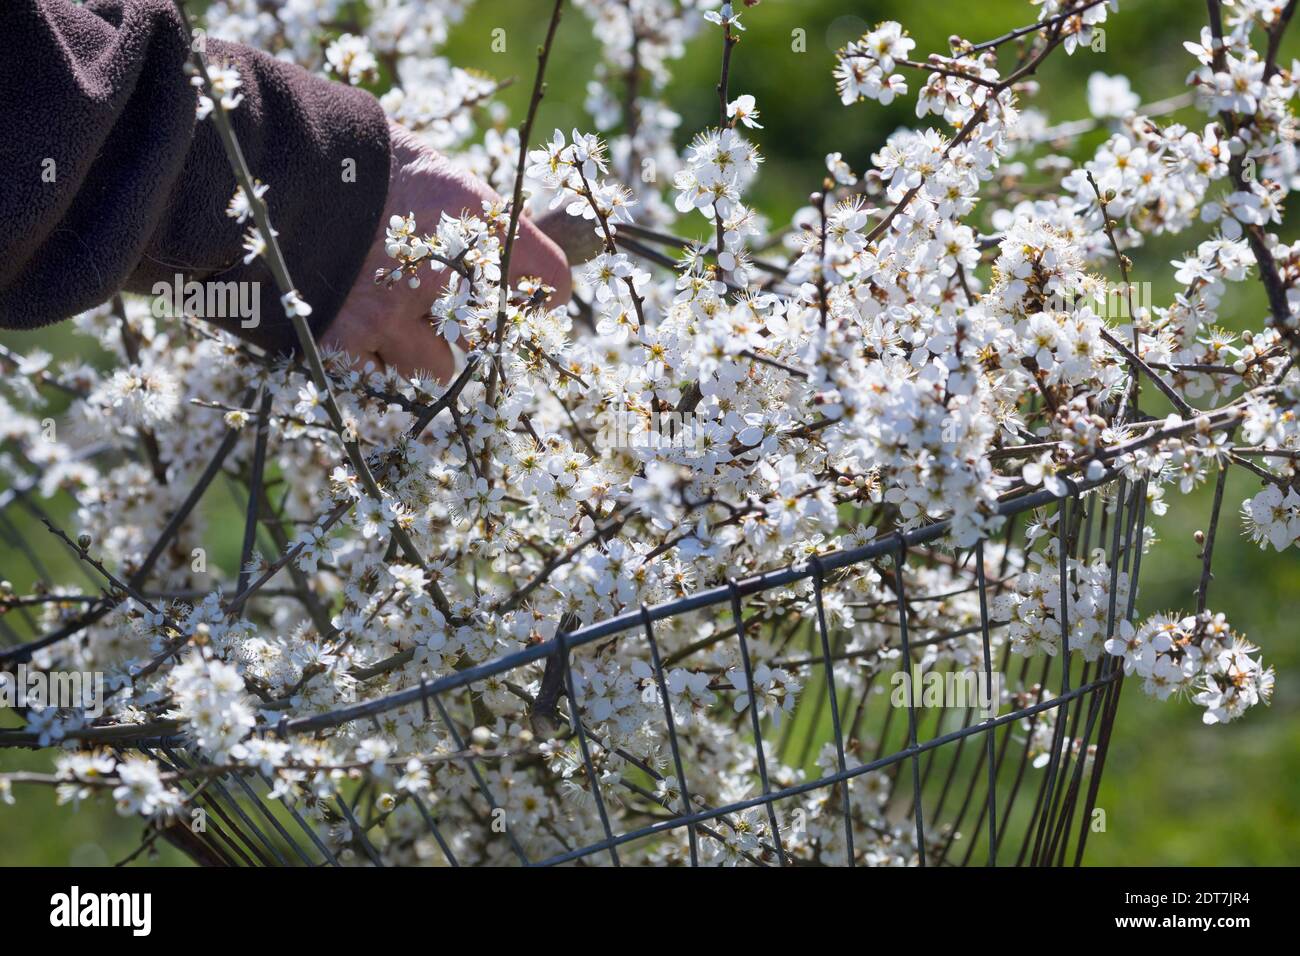 blackthorn, sloe (Prunus spinosa), harvested sloe flowers in a basket, Germany Stock Photo